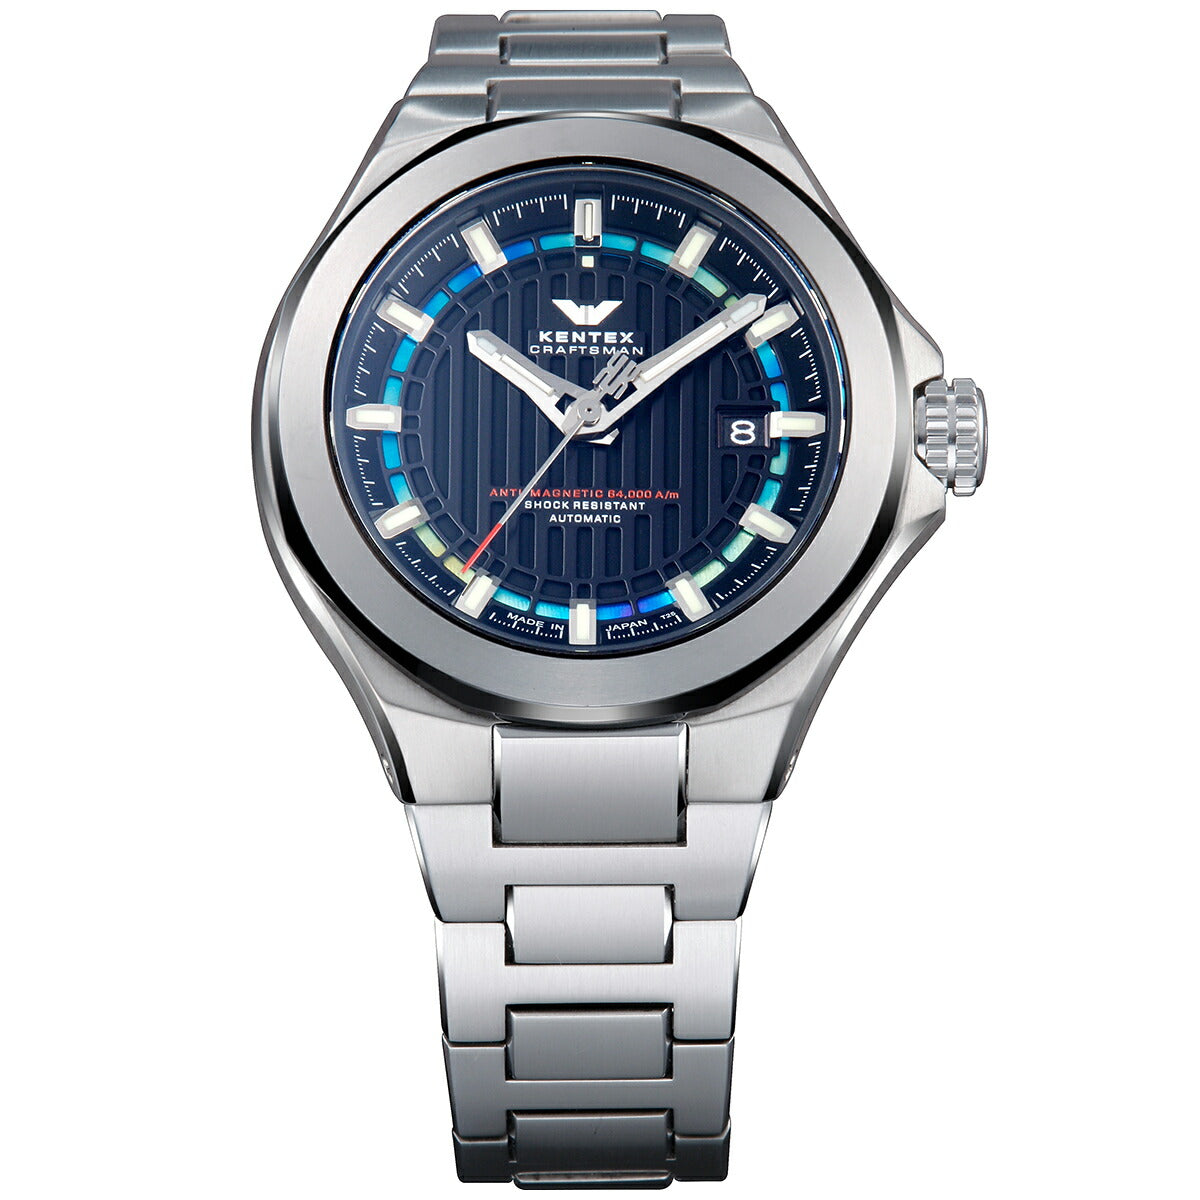 ケンテックス KENTEX クラフツマン プレステージ ブルー 限定モデル 日本製 S526X-8 腕時計 時計 メンズ 自動巻き CRAFTSMAN PRESTIGE BLUE